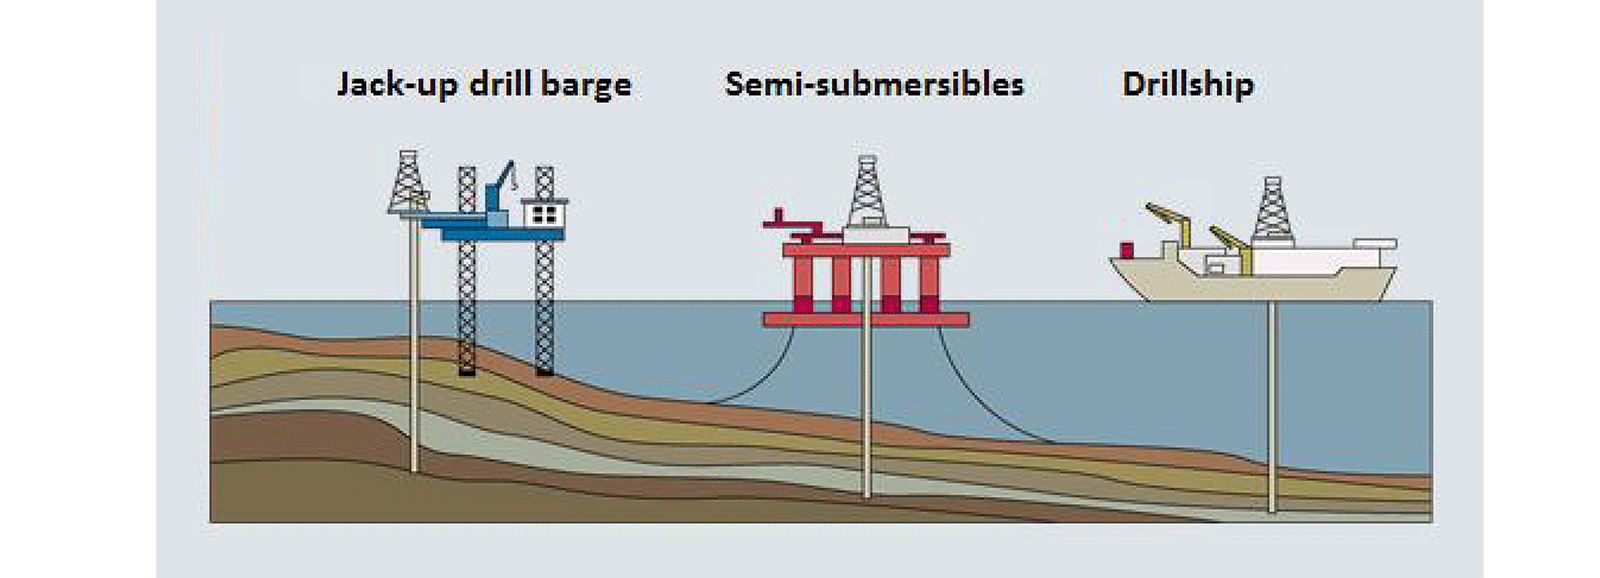 Campo petrolífero marino